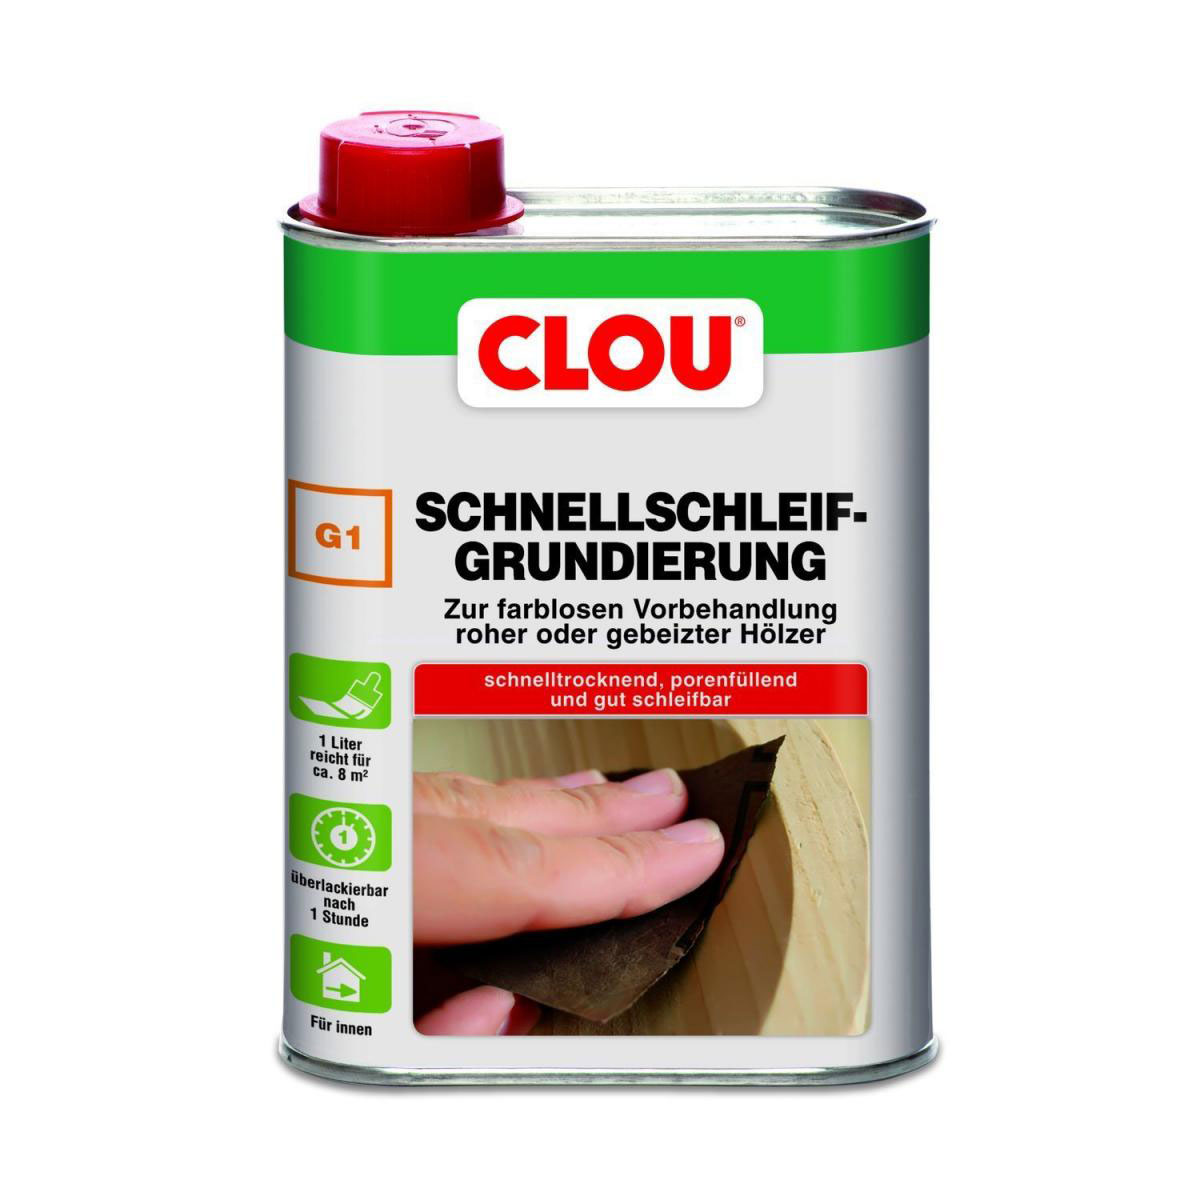 Clou G1 Schnellschleif-Grundierung, 250 ml